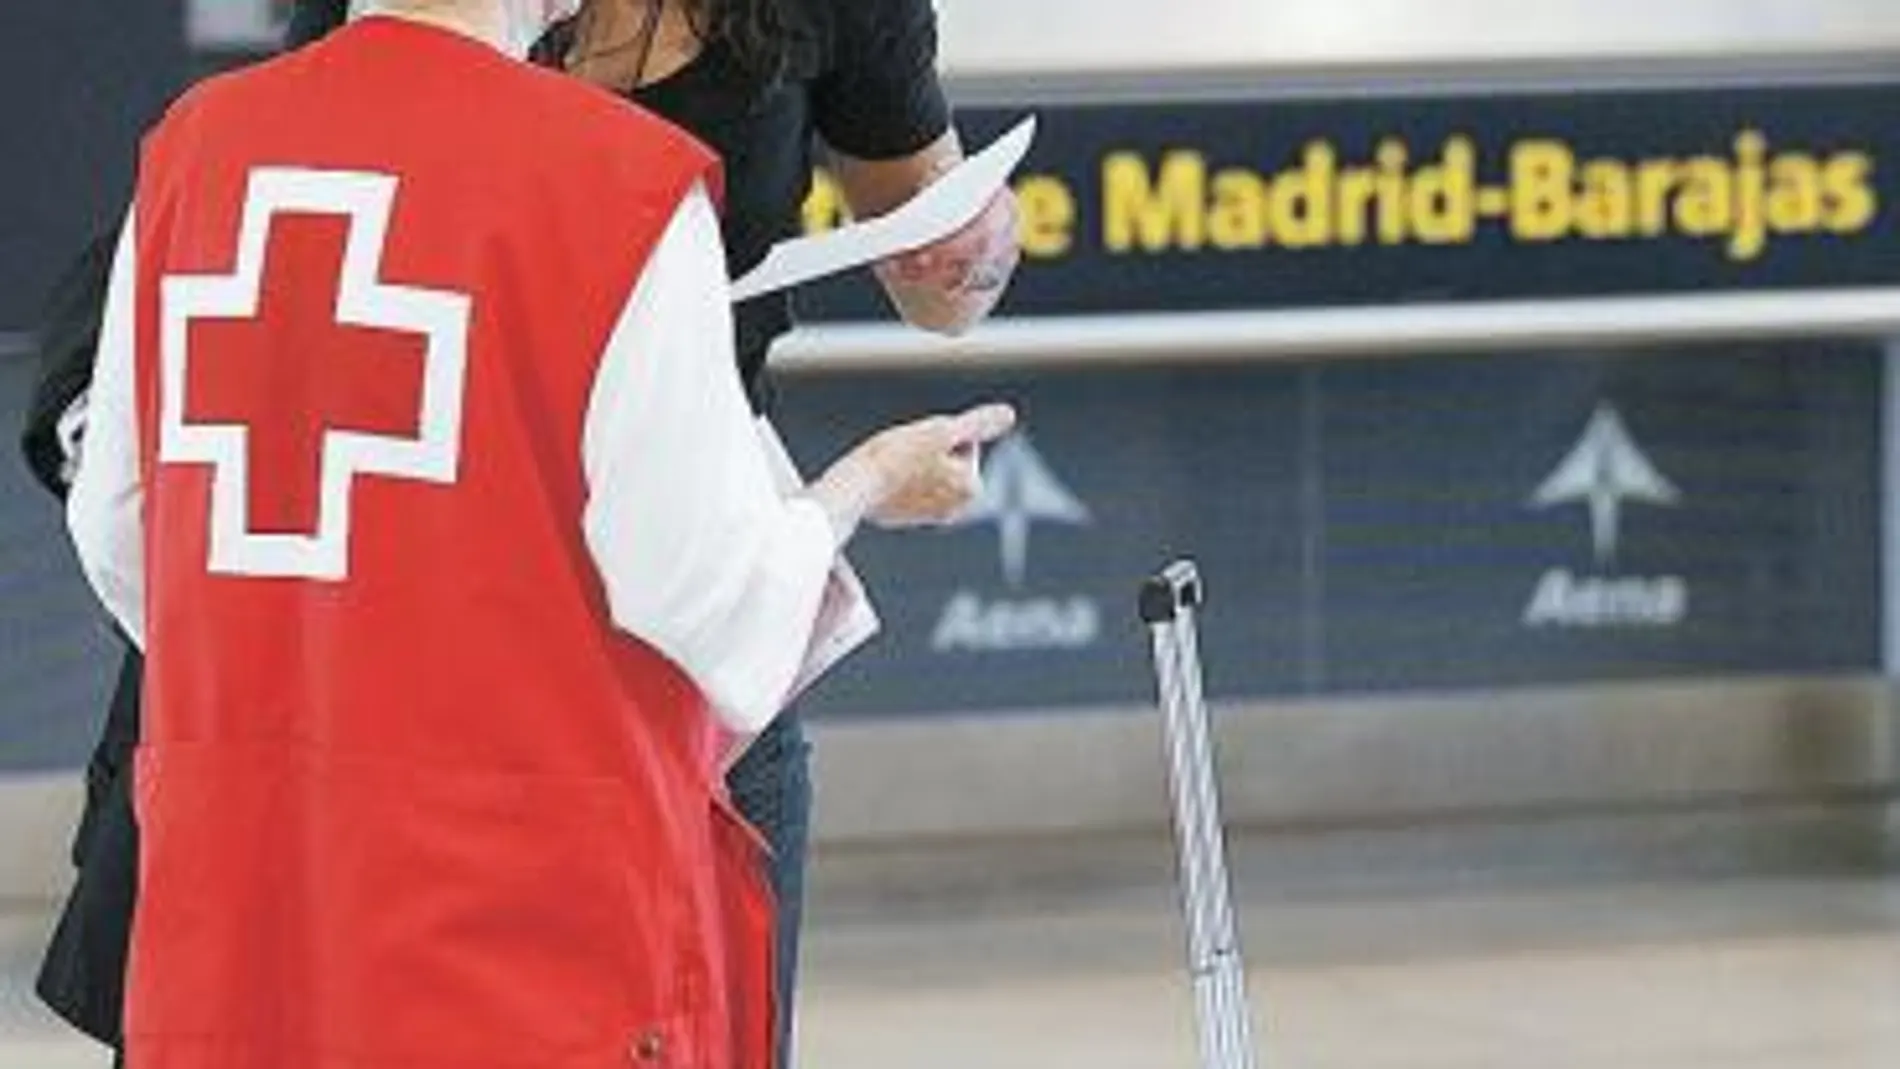 Los aeropuertos disponen de puntos de información sobre la gripe A